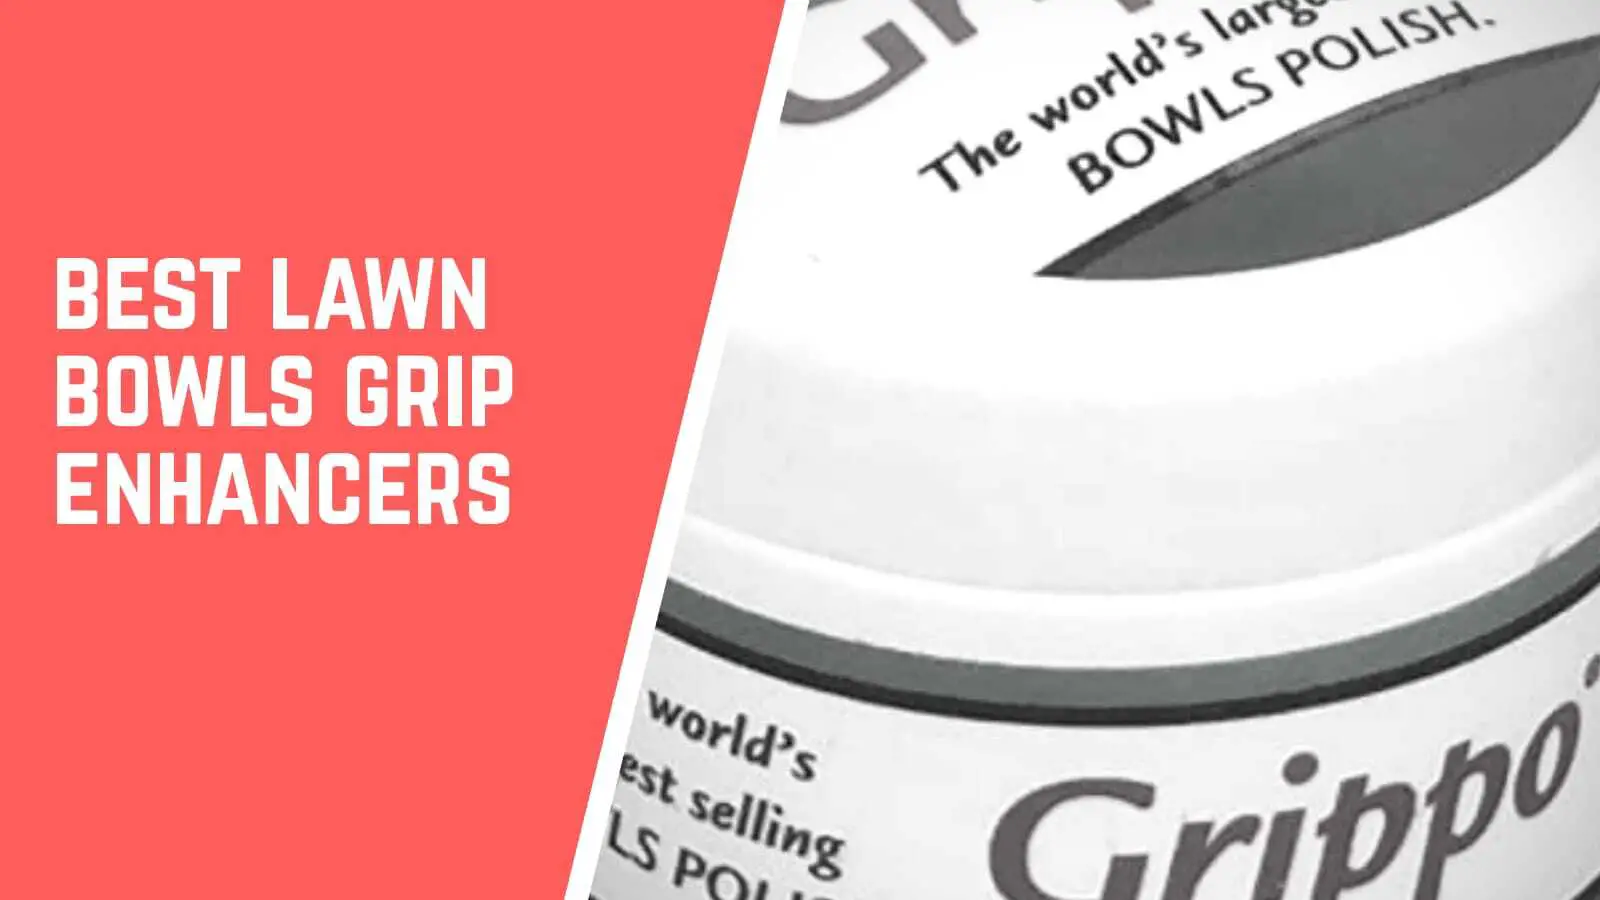 Best lawn bowls grip enhancers